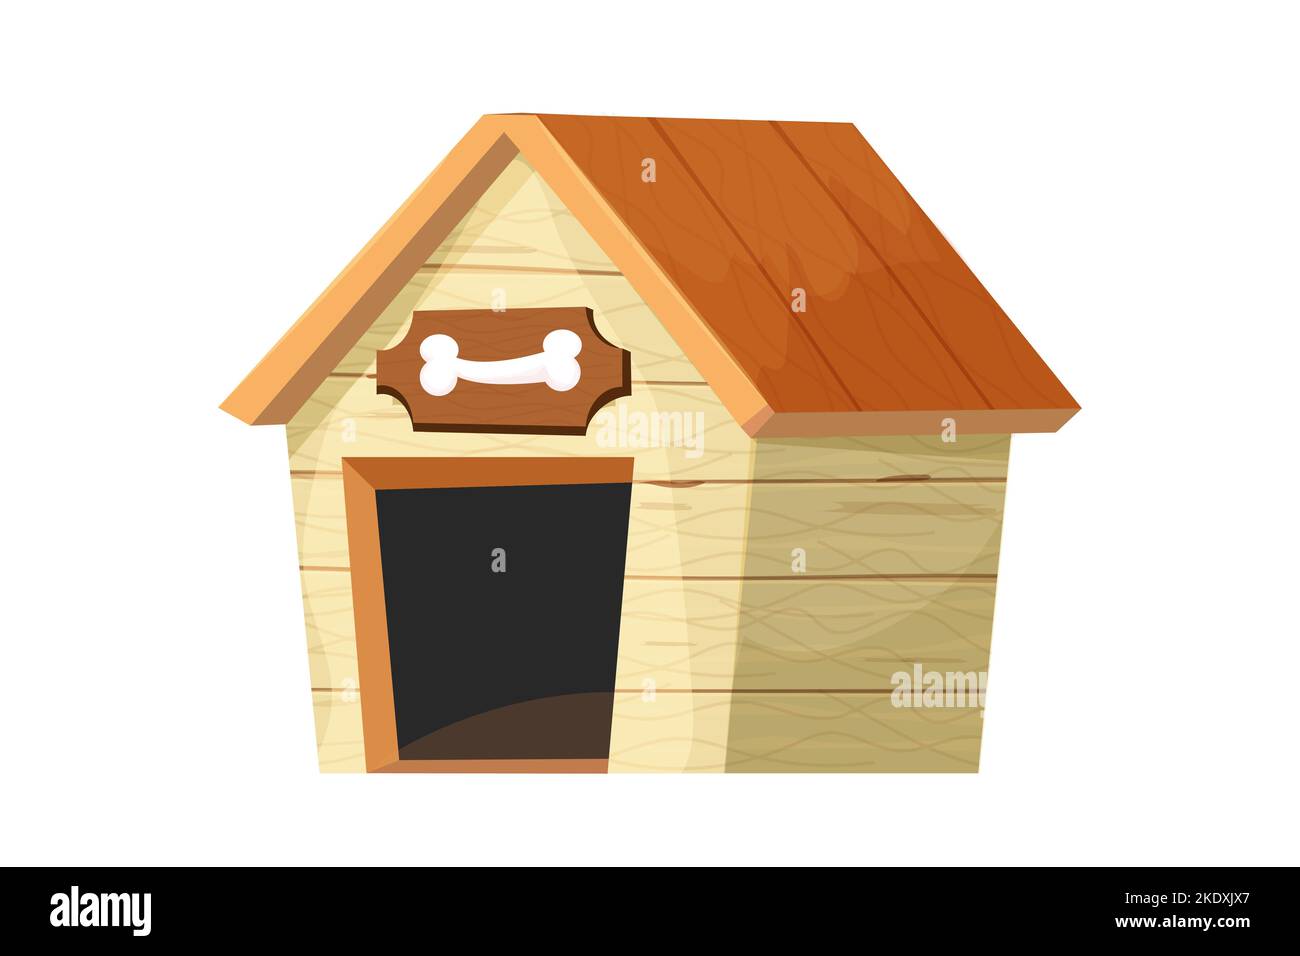 Lustige hundehütte, hölzerne Zwinger im Cartoon-Stil isoliert auf weißem Hintergrund. Komische kindliche Konstruktion mit Dach und Schale mit Knochen. Vektorgrafik Stock Vektor